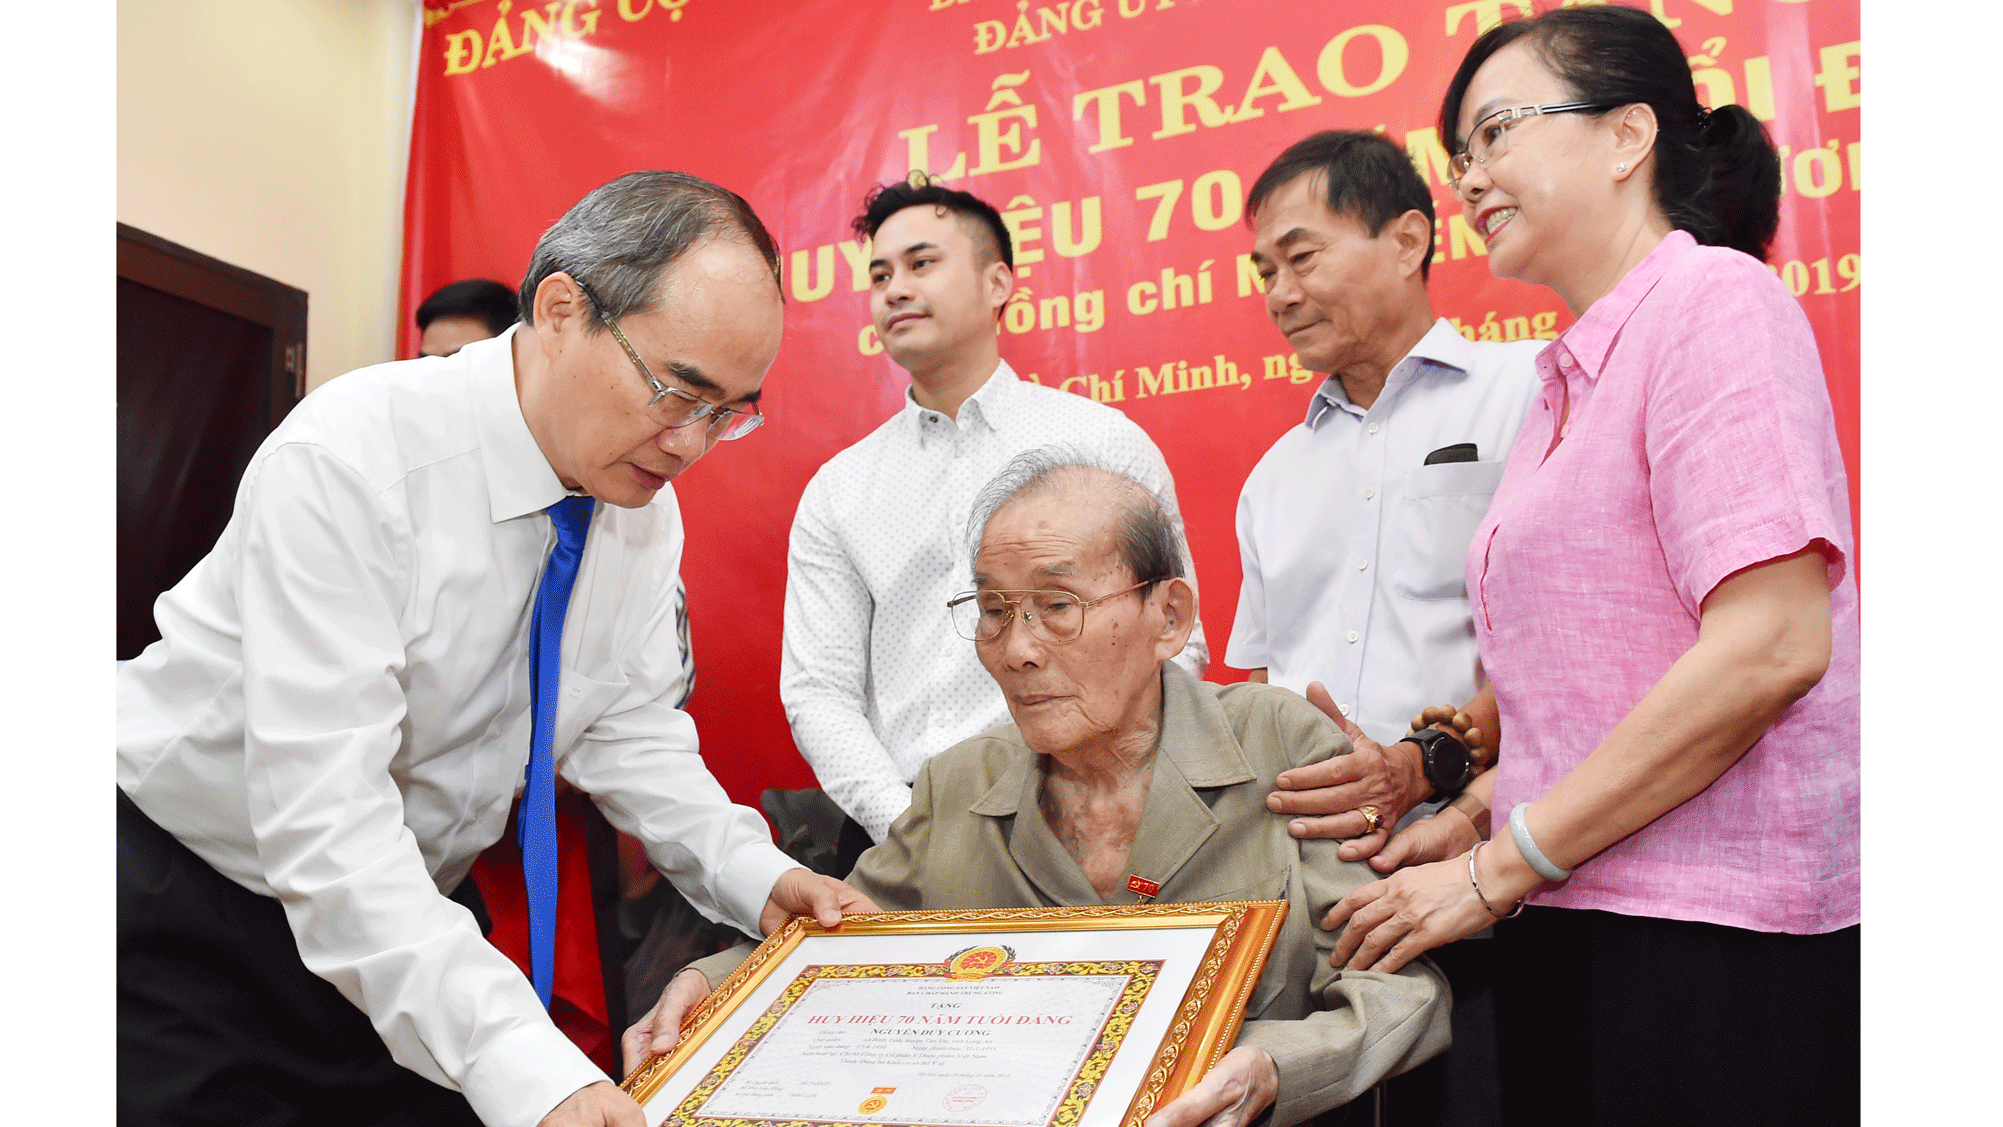 Đồng chí Nguyễn Thiện Nhân, Ủy viên Bộ Chính trị, Bí thư Thành ủy TPHCM, trao Huy hiệu 70 năm tuổi Đảng cho đồng chí Nguyễn Duy Cương. Ảnh: VIỆT DŨNG